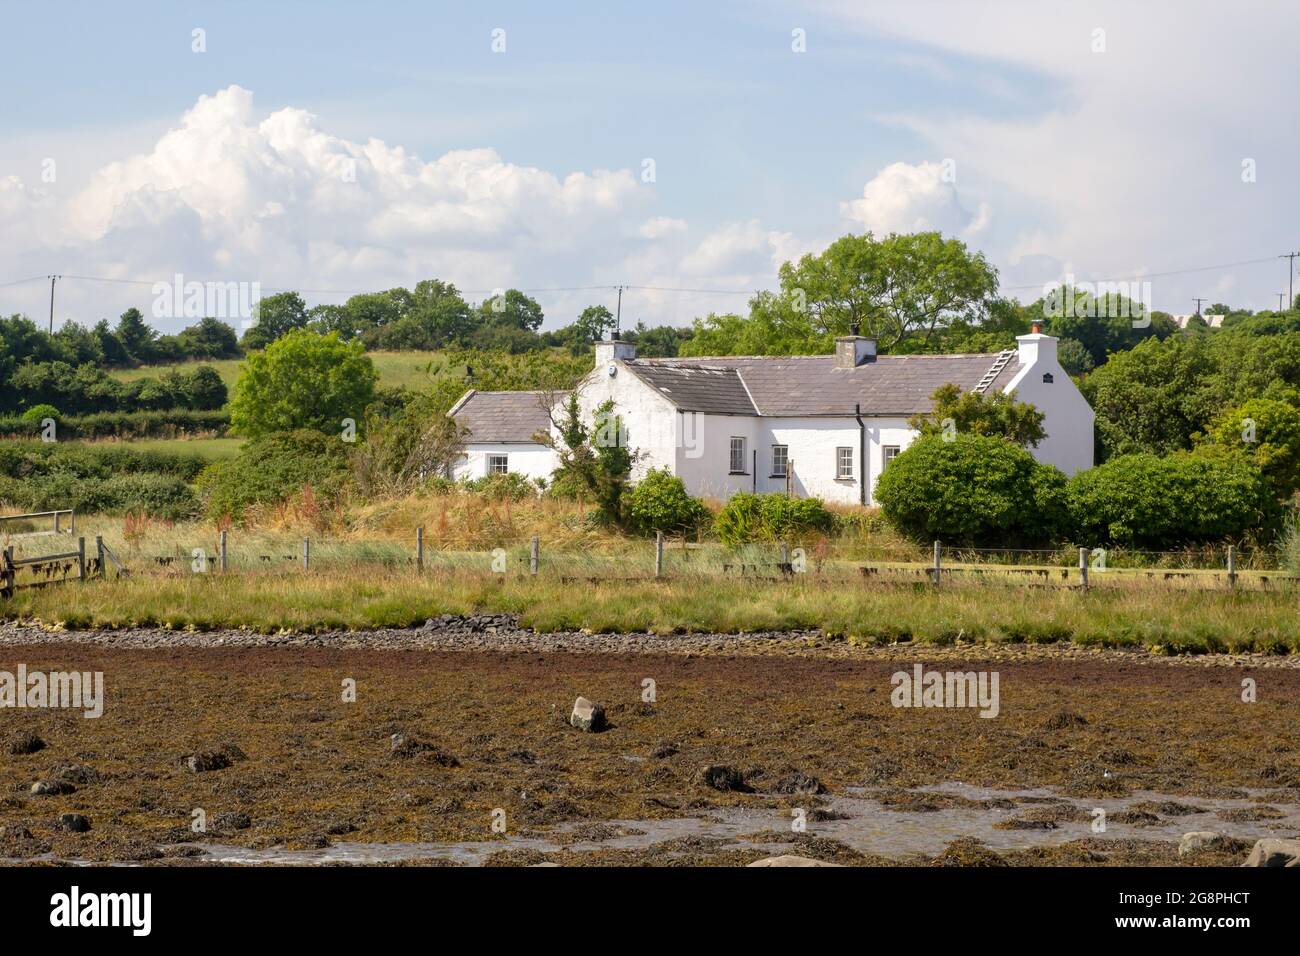 21 luglio 2021 UN piccolo bungalow bianco con il proprio molo di legno si trova sul bordo dell'acqua vicino a Gibbs Island su Strangford Lough nella contea in basso a nord i Foto Stock